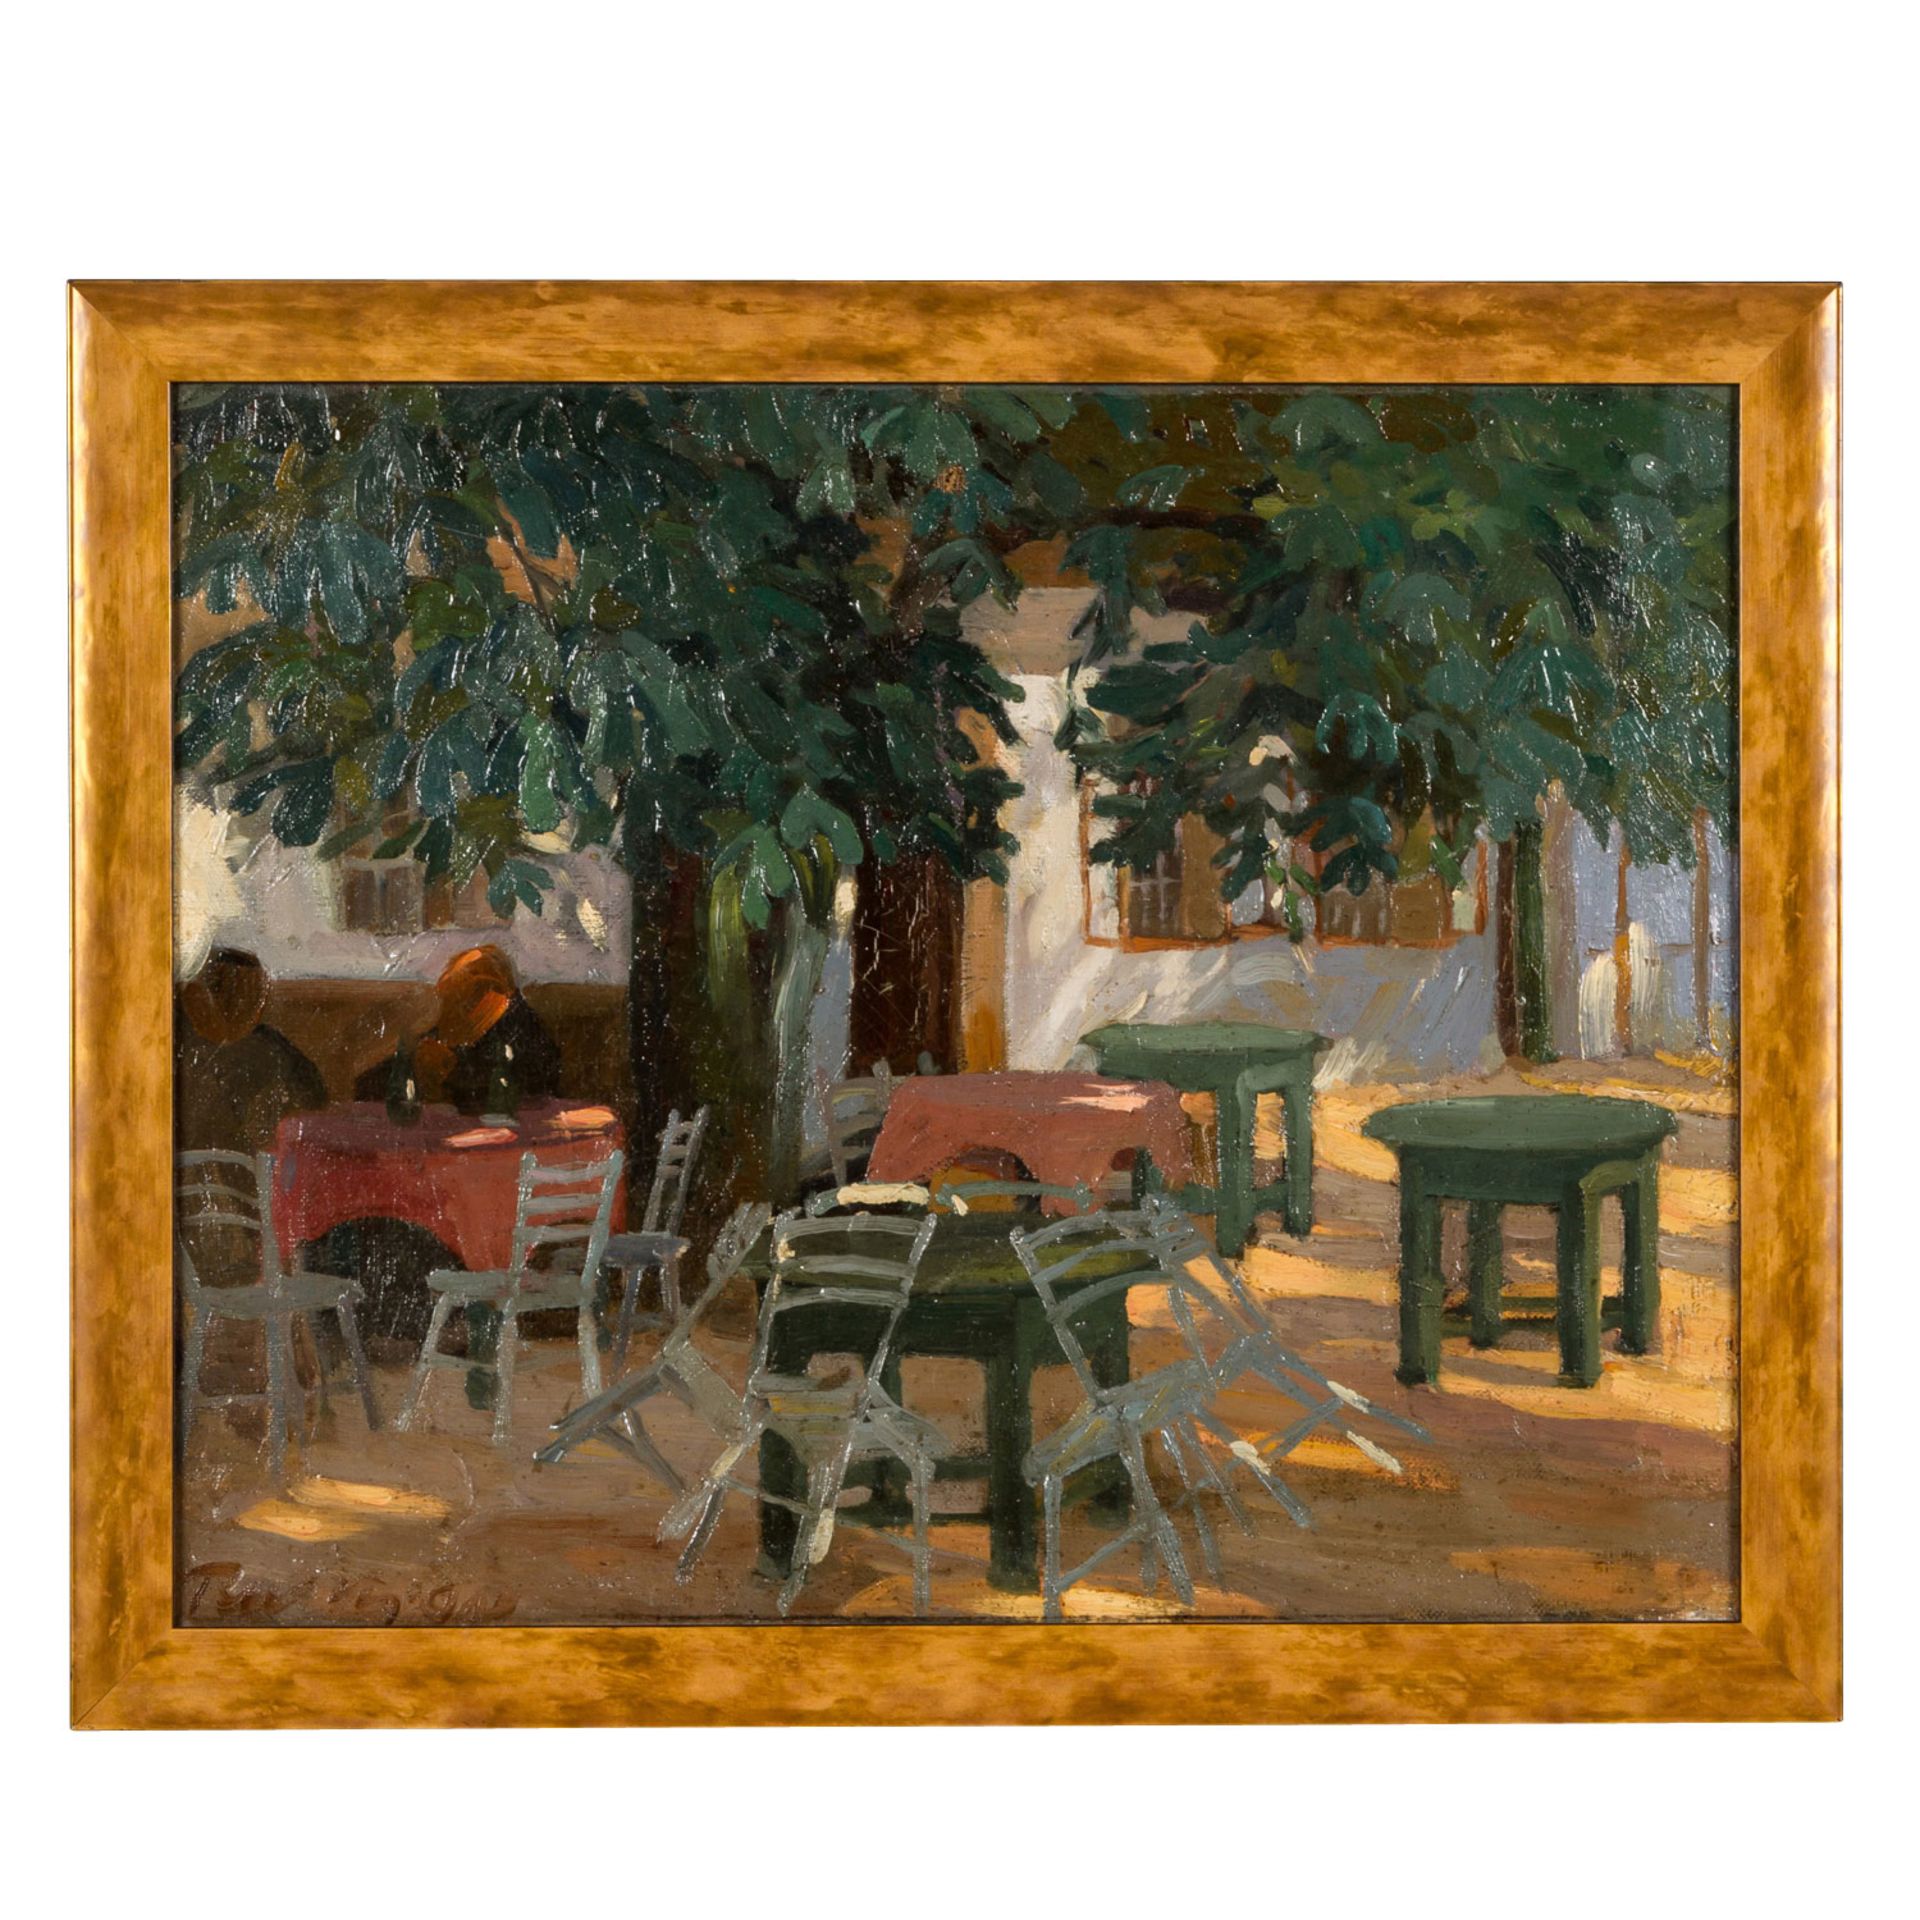 RUSZTI, GYULA (1885-1918) "Mittags auf der Terrasse" - Image 2 of 4